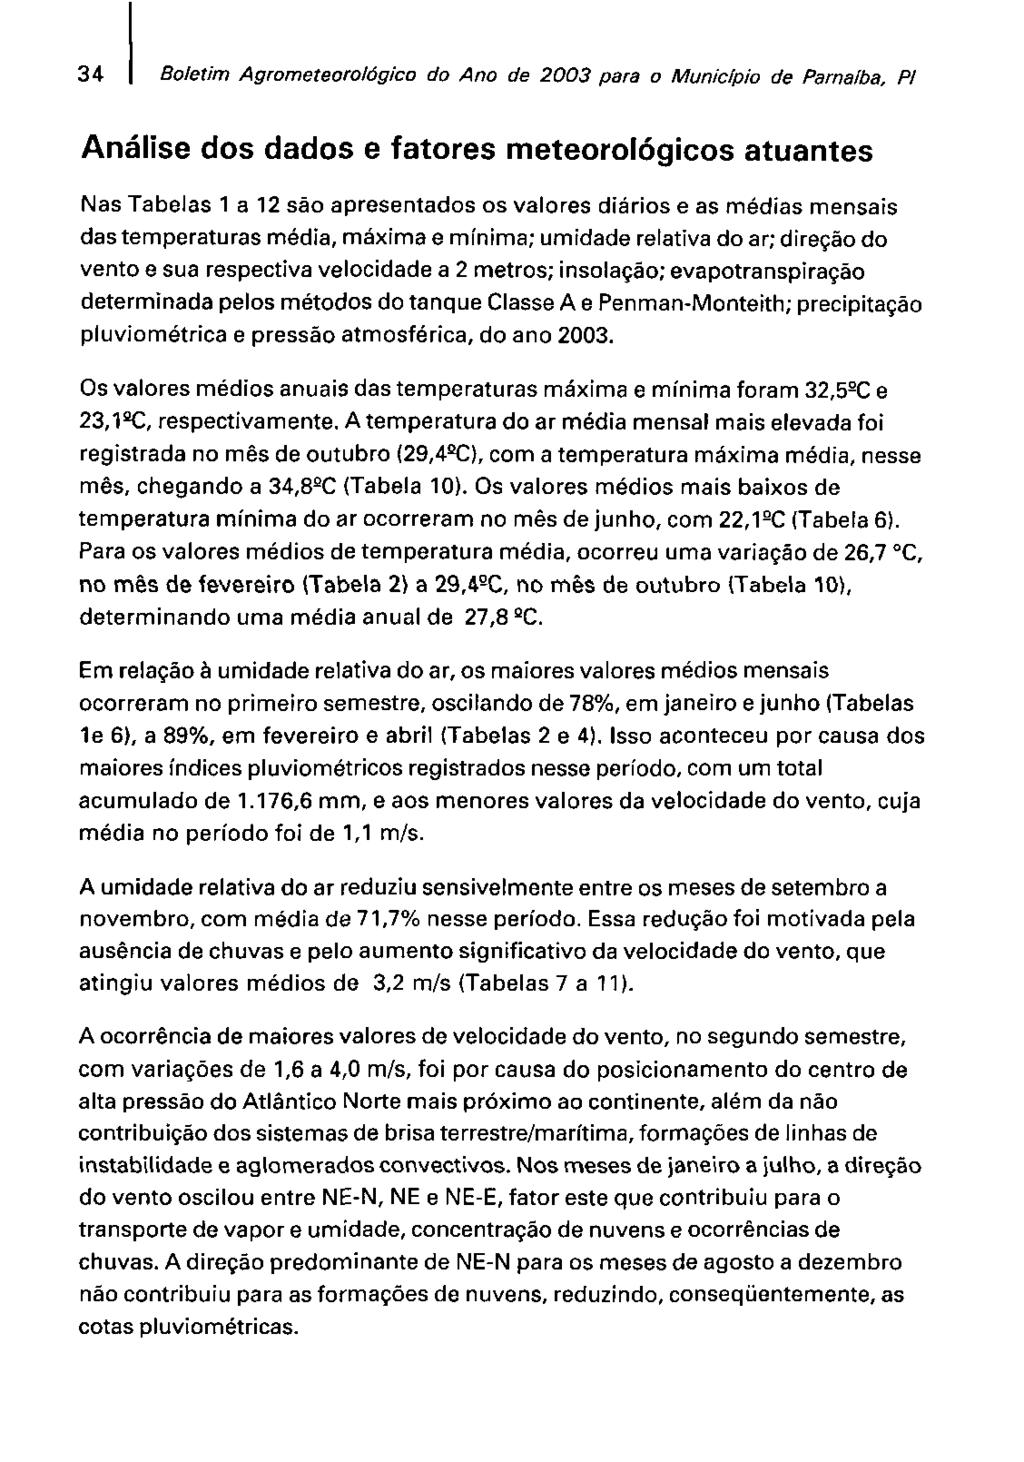 34 Boletim Agmmefeorol6gico do Ano de 2003 para o Municipio de Parnaíba, Pl Análise dos dados e fatores meteorológicos atuantes Nas Tabelas 1 a 12 são apresentados os valores diários e as médias